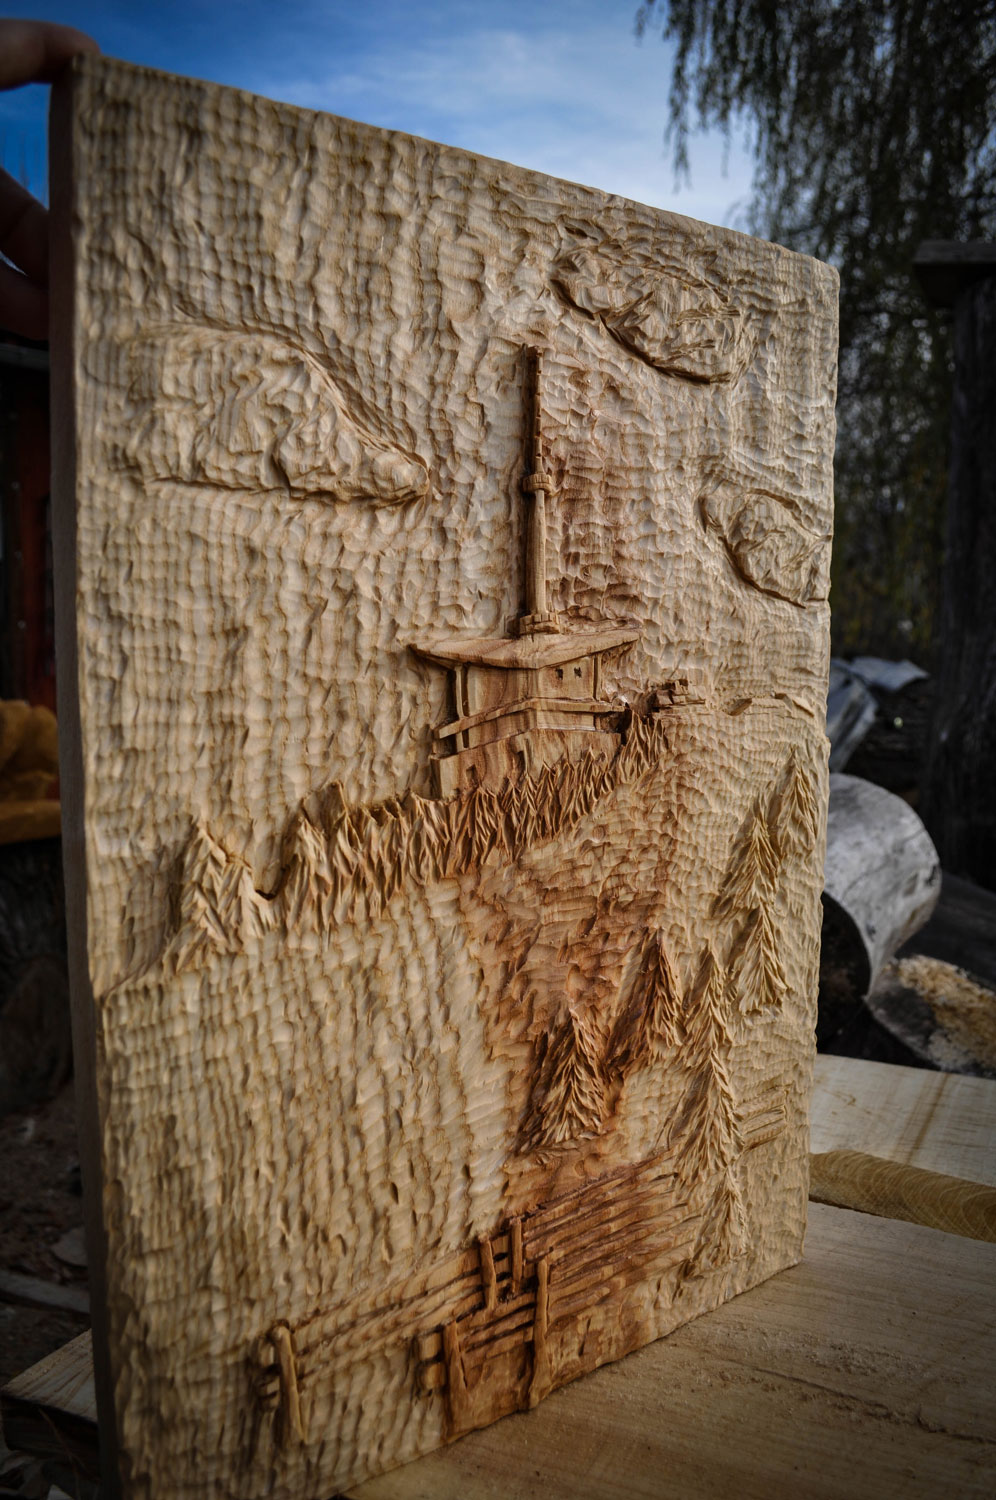 drevorezba-vyrezavani-carving-wood-drevo-socha-lysa-radekzdrazil-20211115-05